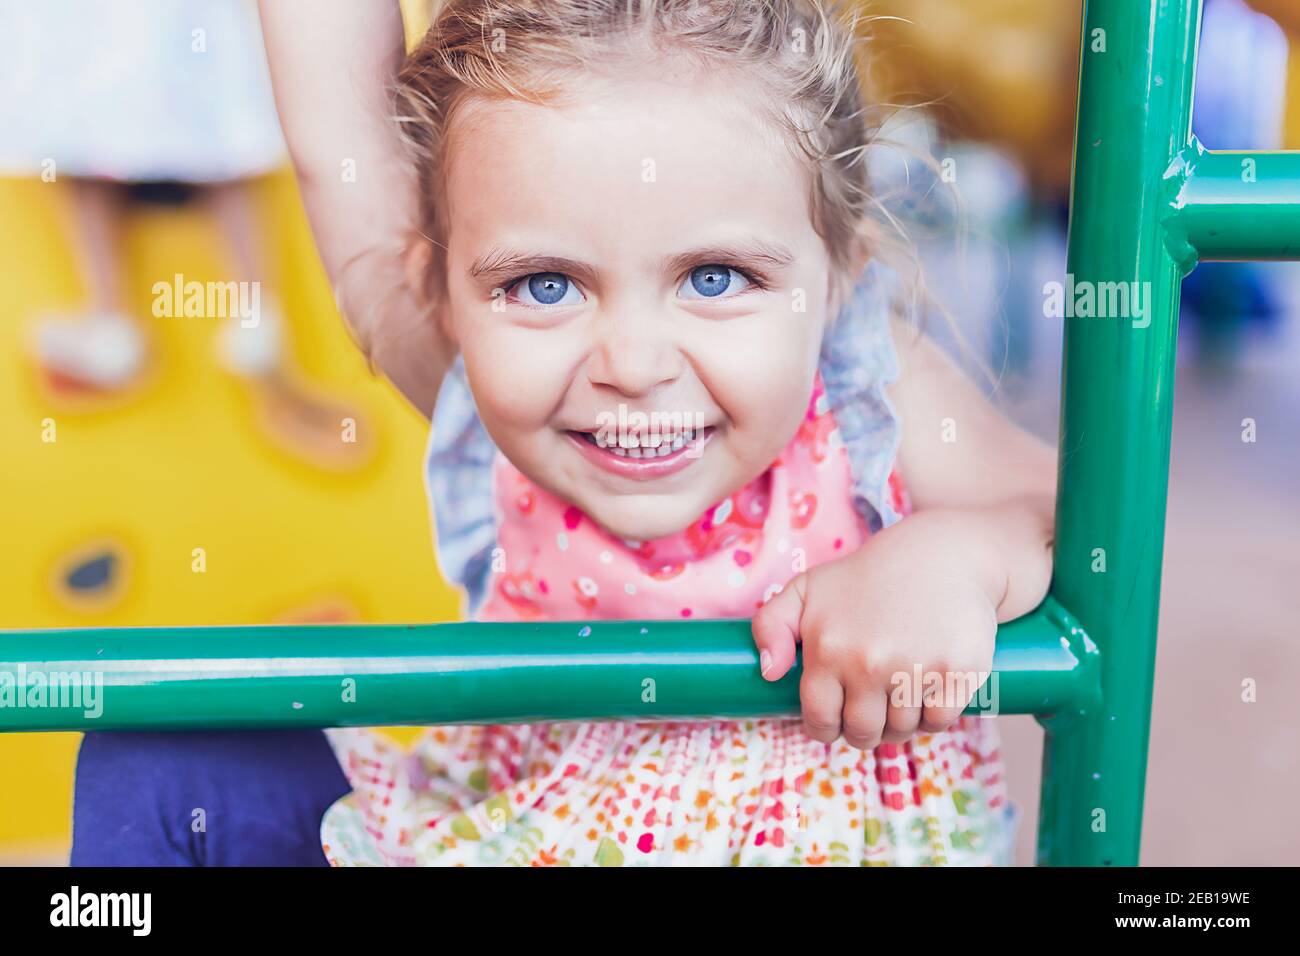 Jeune fille avec de grands yeux bleus jouant sur une aire de jeux publique. Banque D'Images